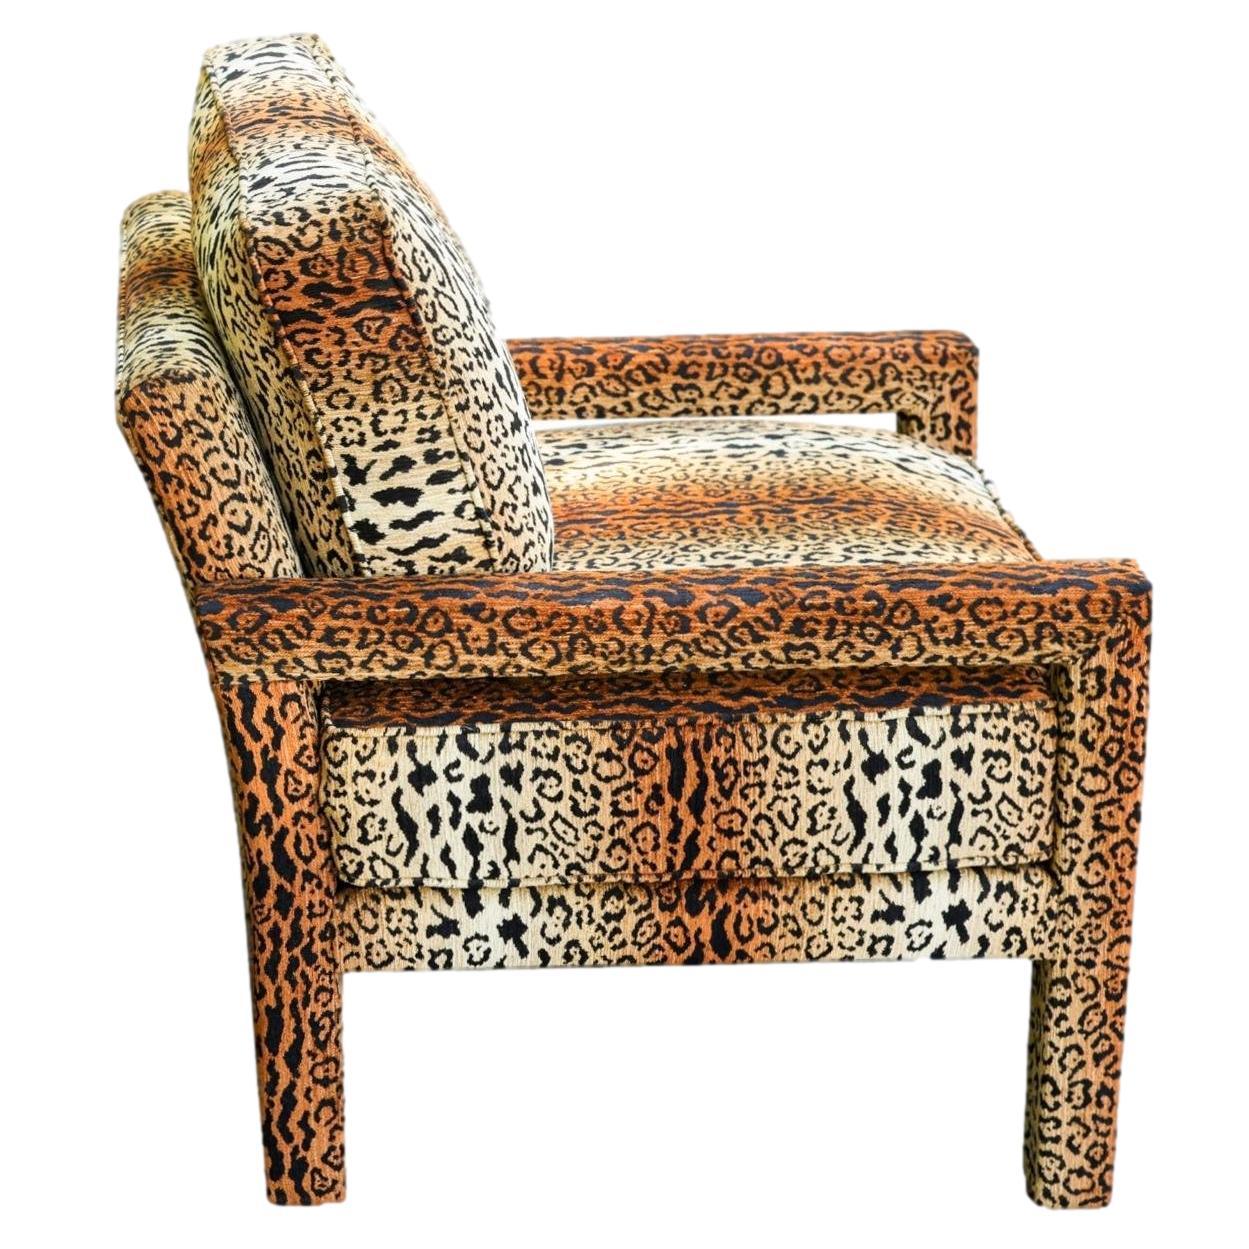 cheetah print chair outdoor